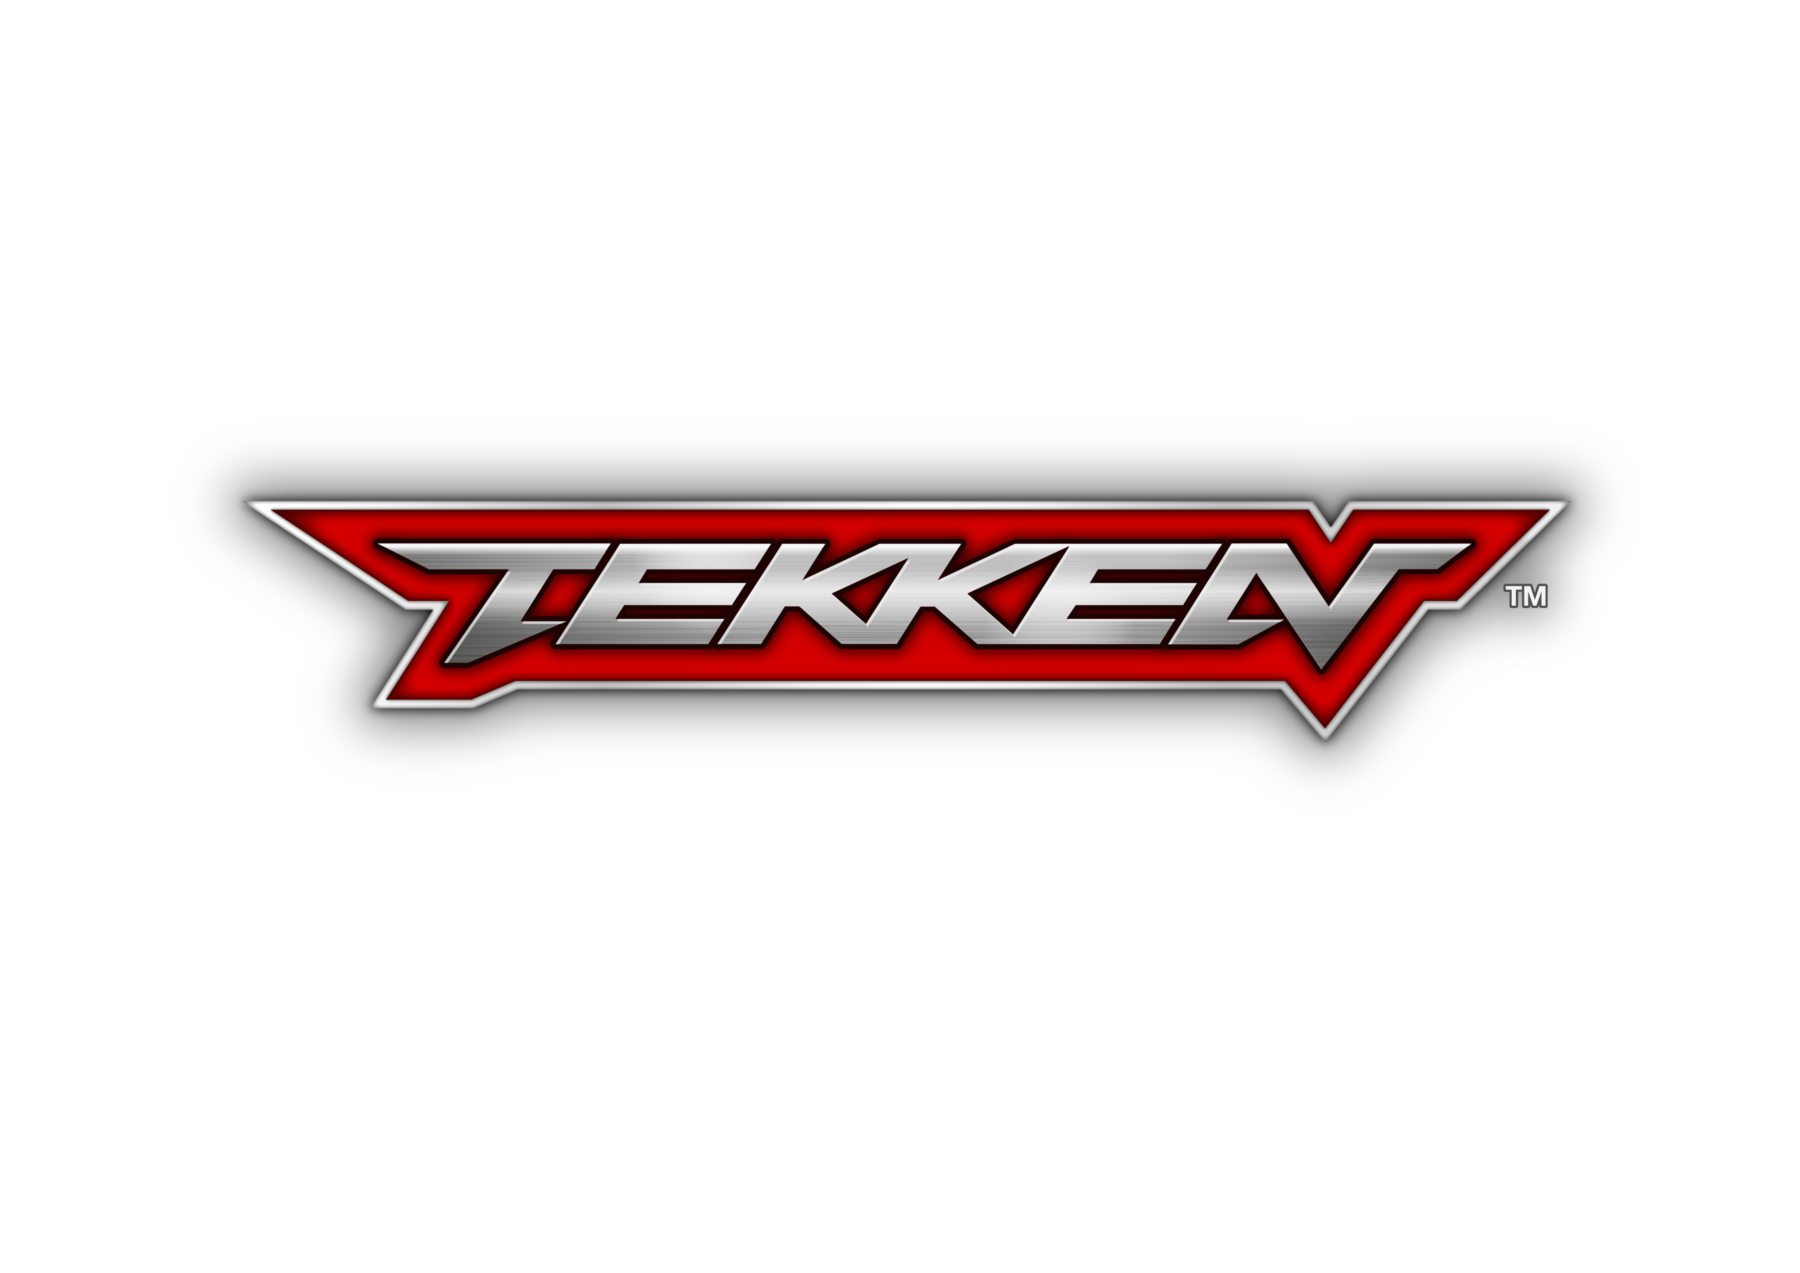 Tekken mobile code.